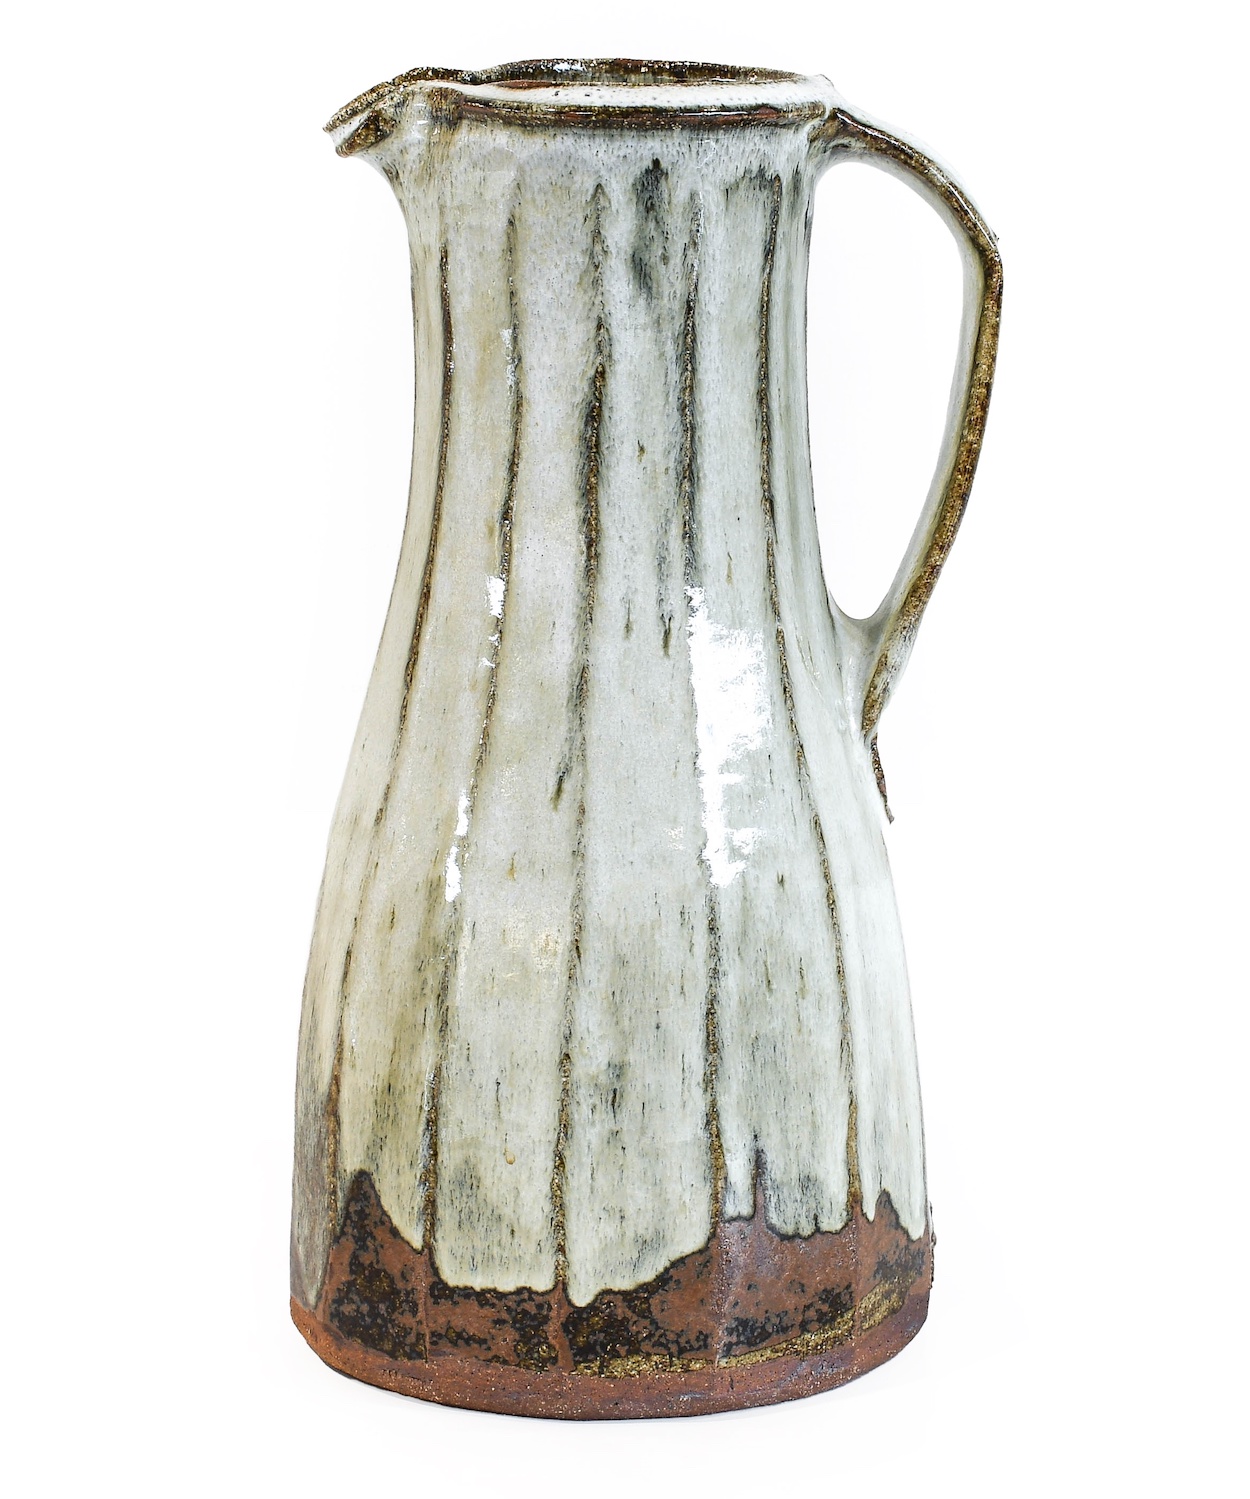 A jug by Jim Malone